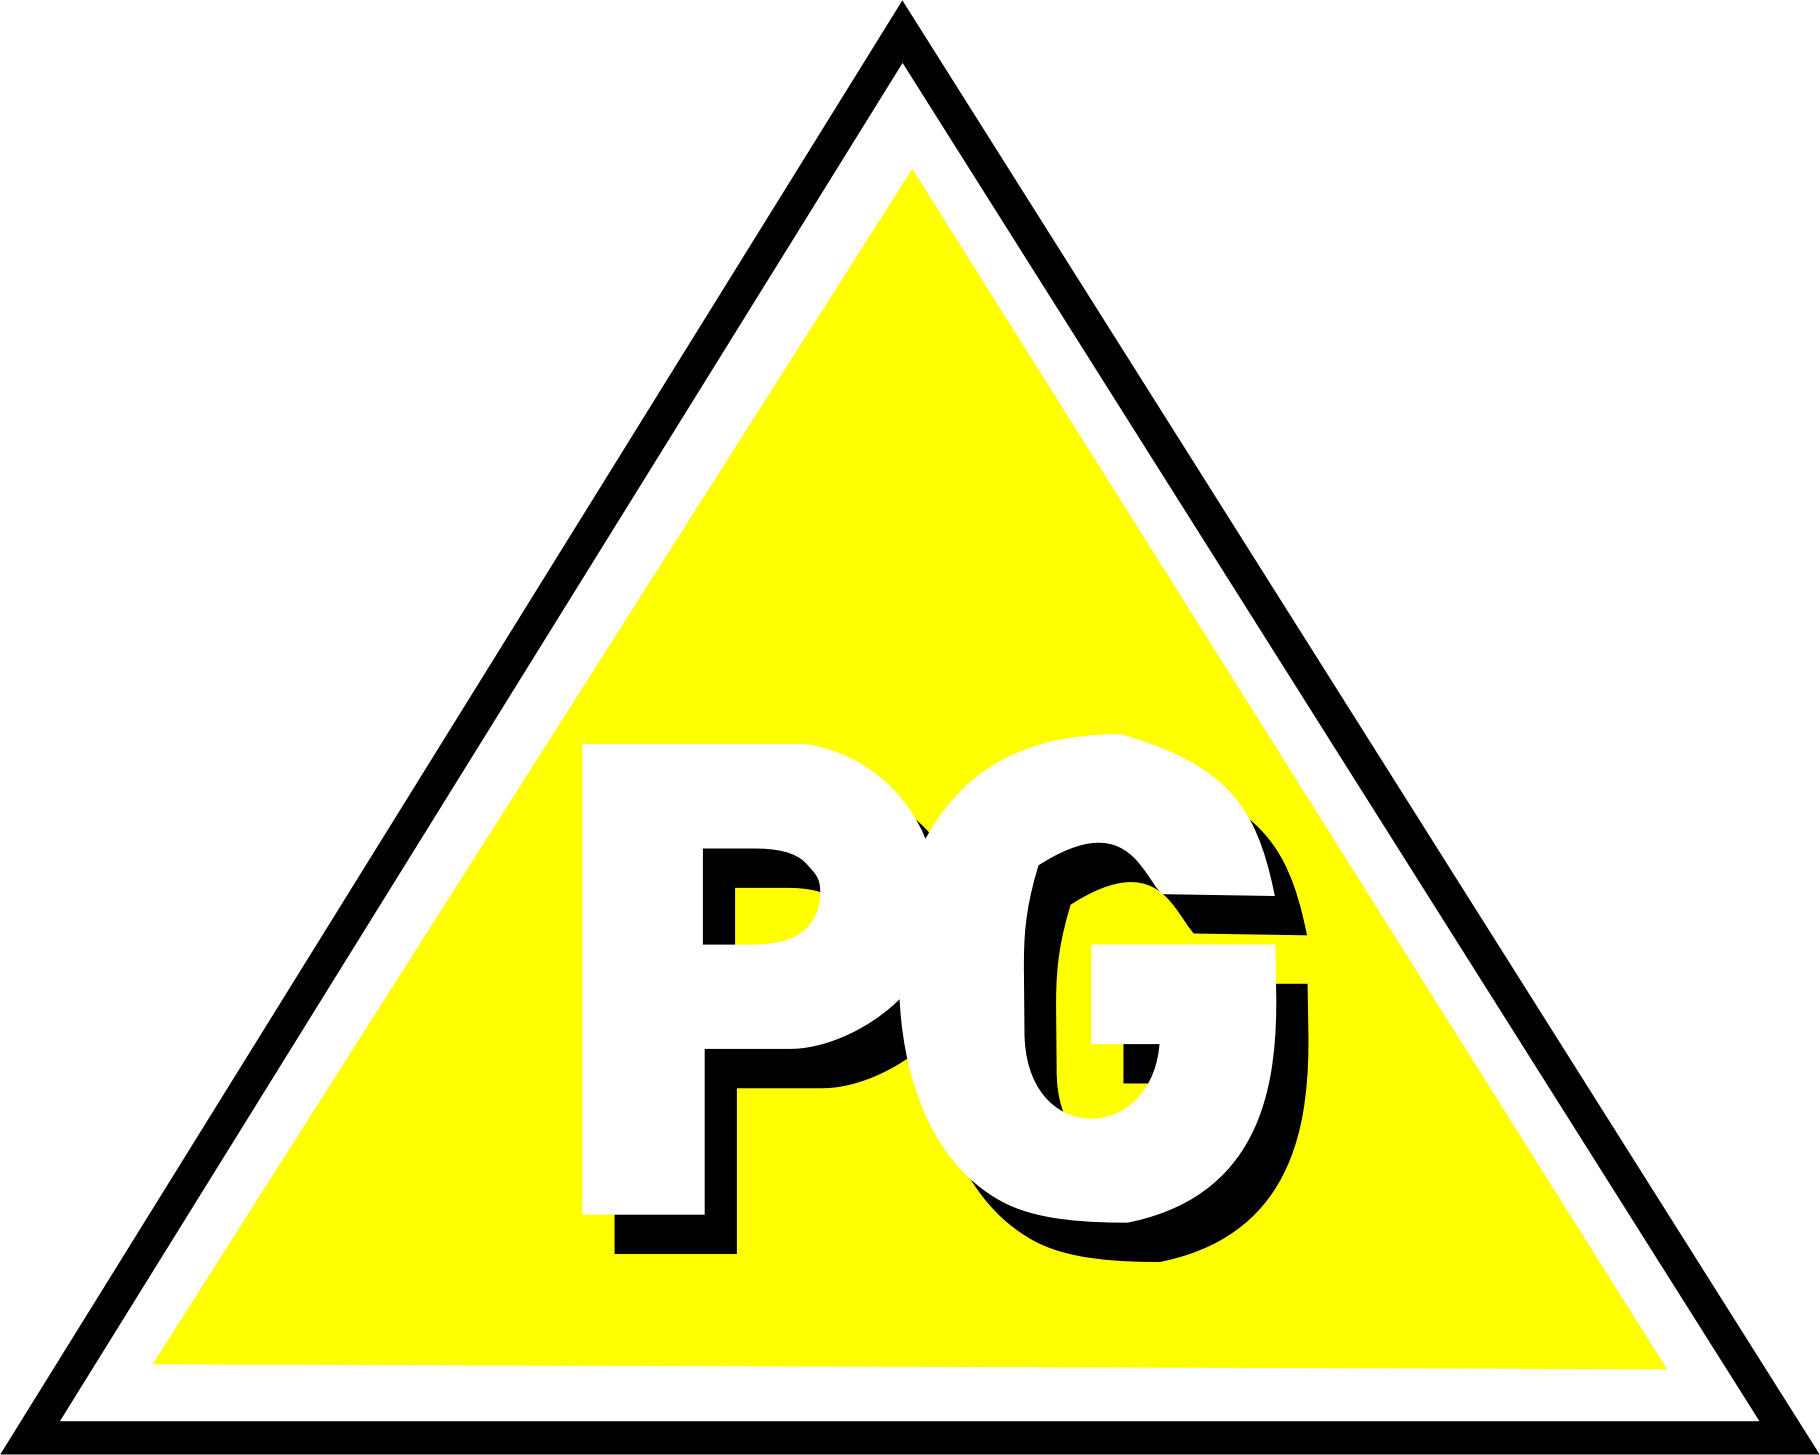 pg-logos